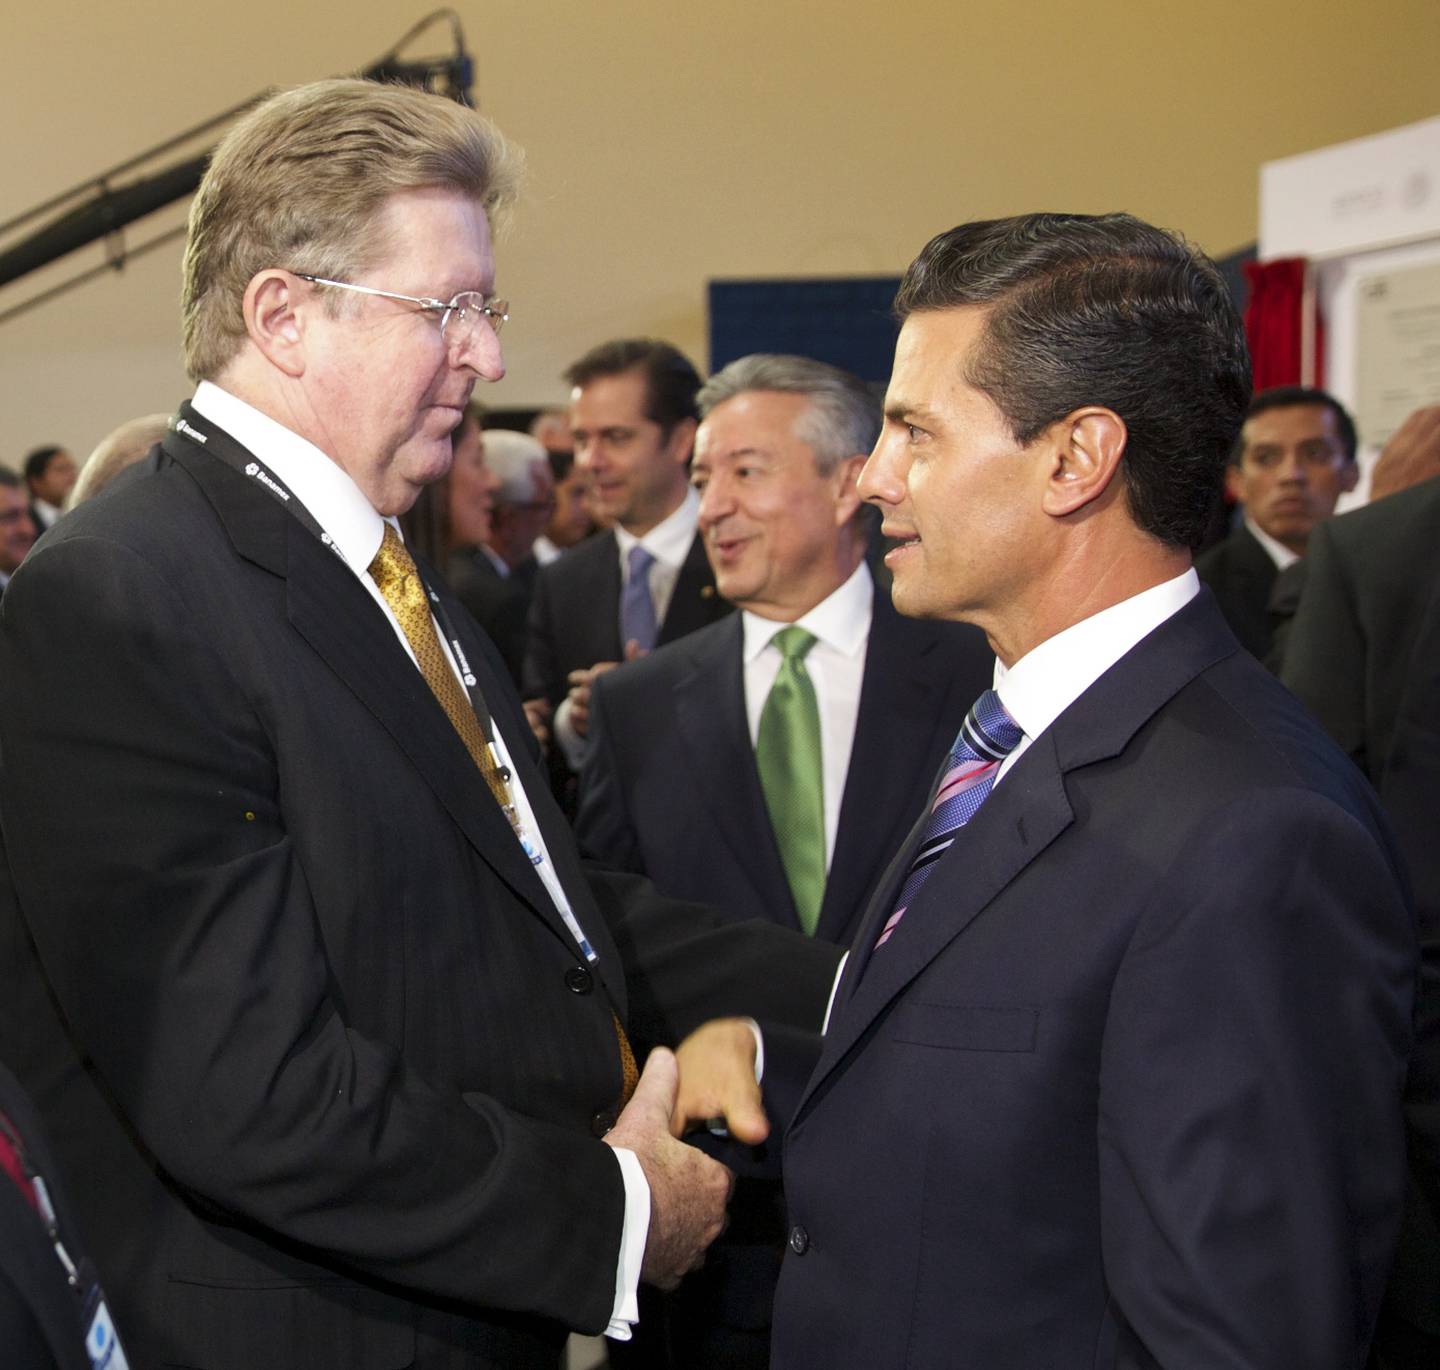 Germán Larrea y el expresidente Enrique Peña Nieto.Fuente: Presidencia de la República vía Bloombergdfd